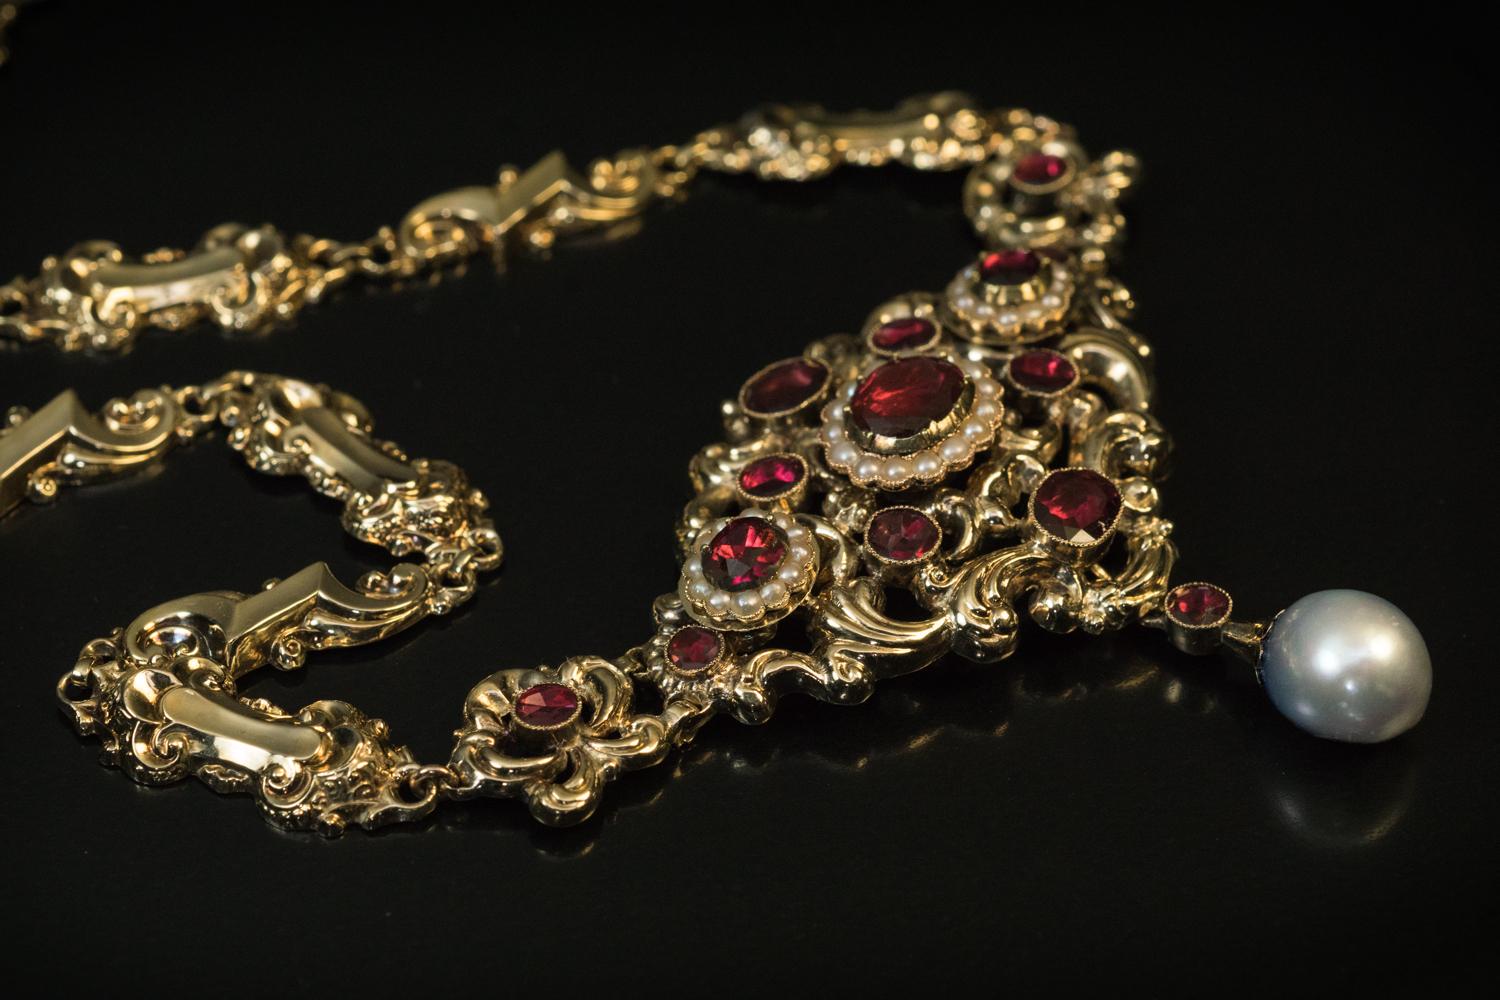 Um 1880

Diese auffällige Halskette aus Hohlgold aus dem 19. Jahrhundert ist im Renaissancestil der 1500er bis frühen 1600er Jahre gestaltet. Die Halskette ist aus 14 Karat Gold gefertigt und mit Granaten und Perlen verziert. Die halbbarocke Perle